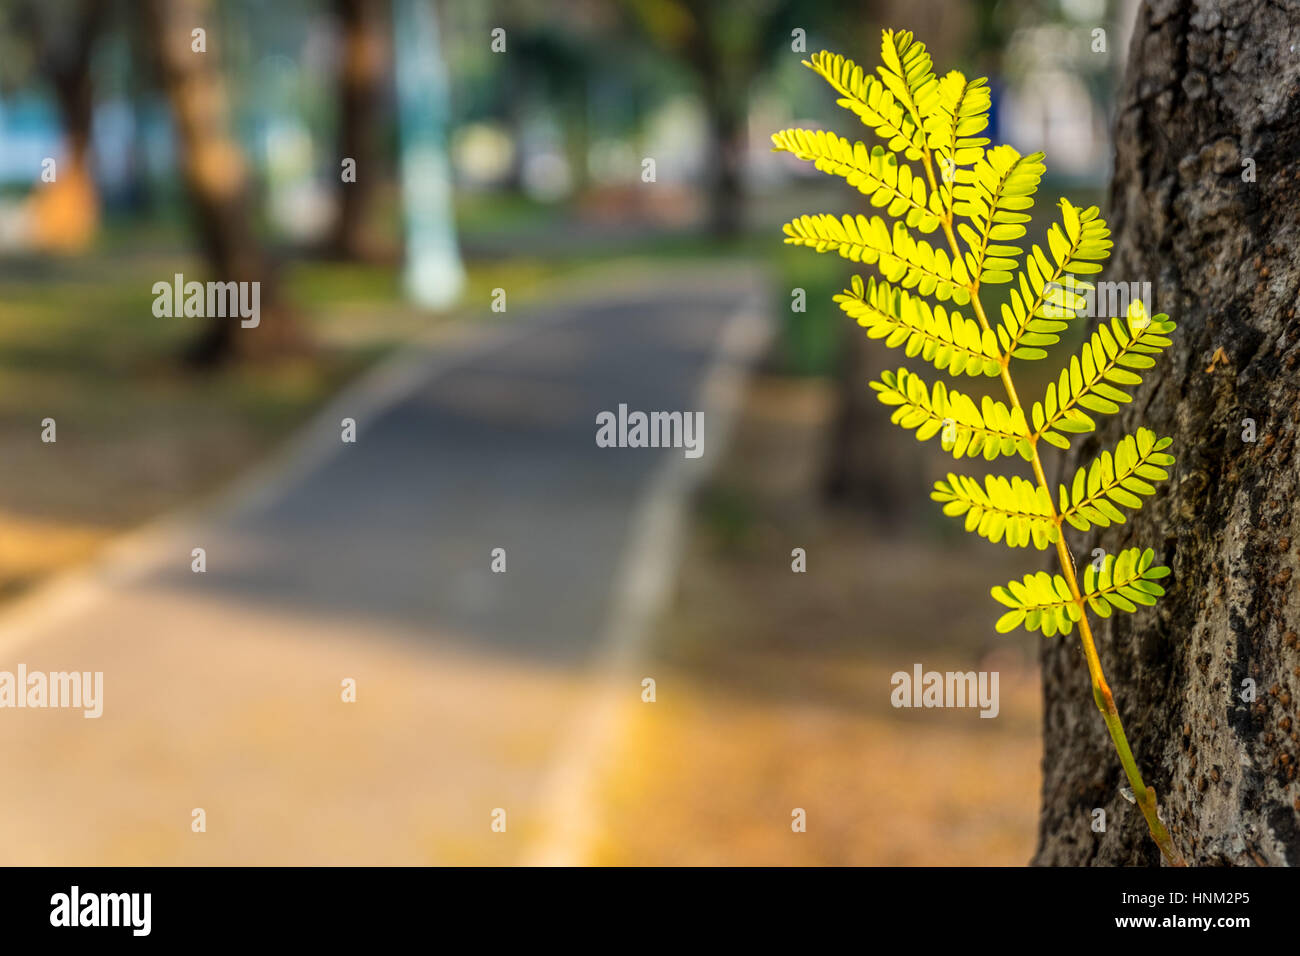 Junge grüne Blätter auf einem großen Baumstamm zwischen einer laufenden Gasse im öffentlichen Park, selektiven Fokus. Stockfoto